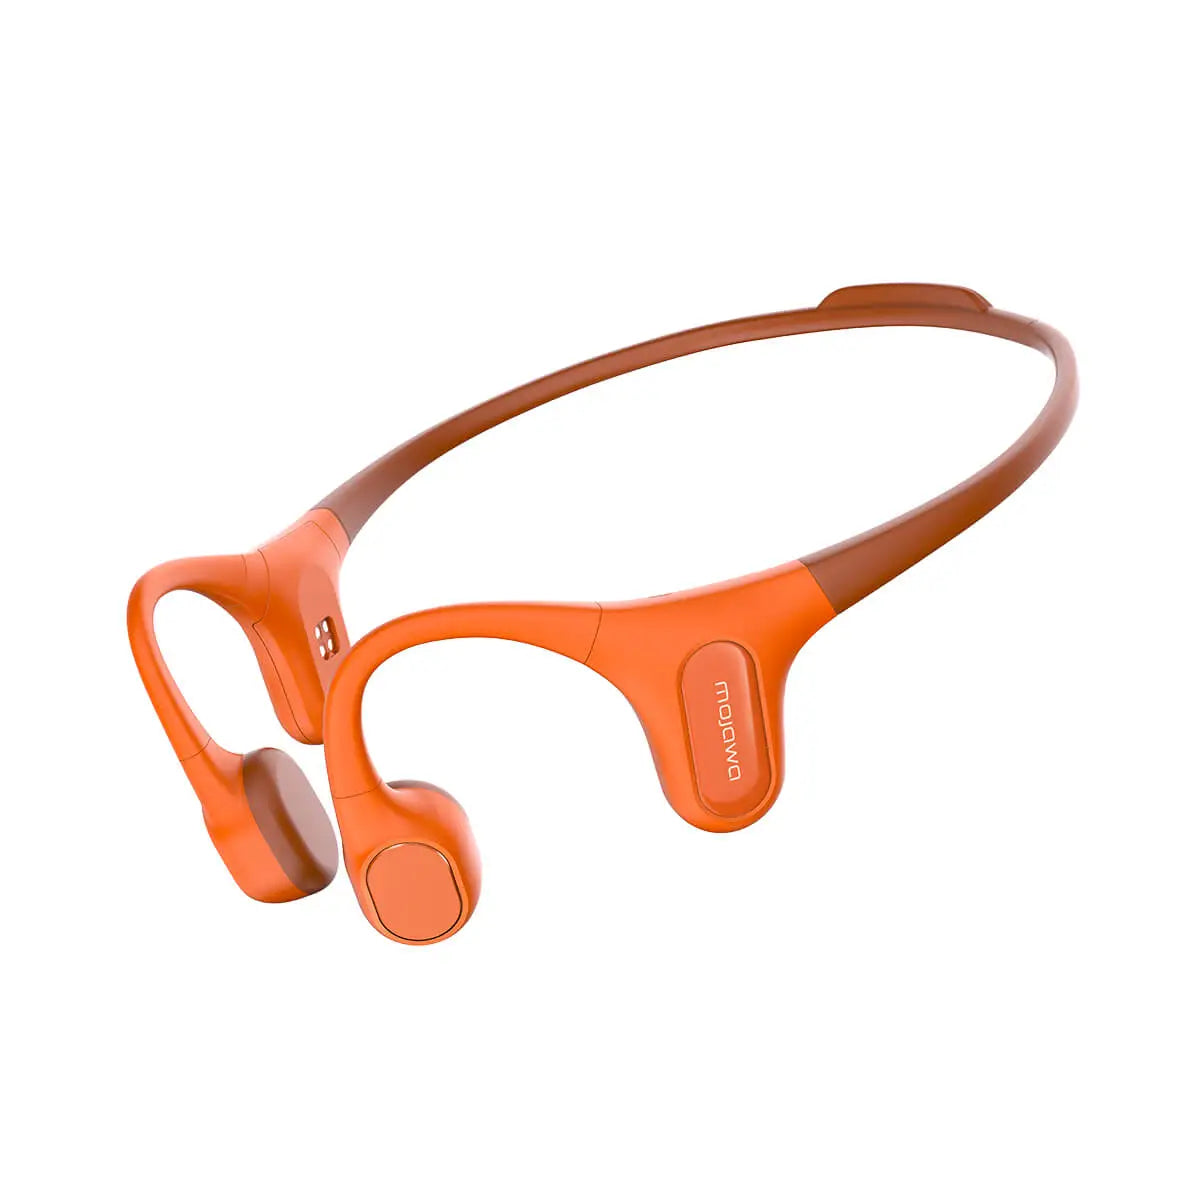 MOJAWA Run Plus Bone Conduction Earphone Orange אוזניות אלחוטיות לשחייה וריצה בטכנולוגיית הולכת עצם בצבע כתום